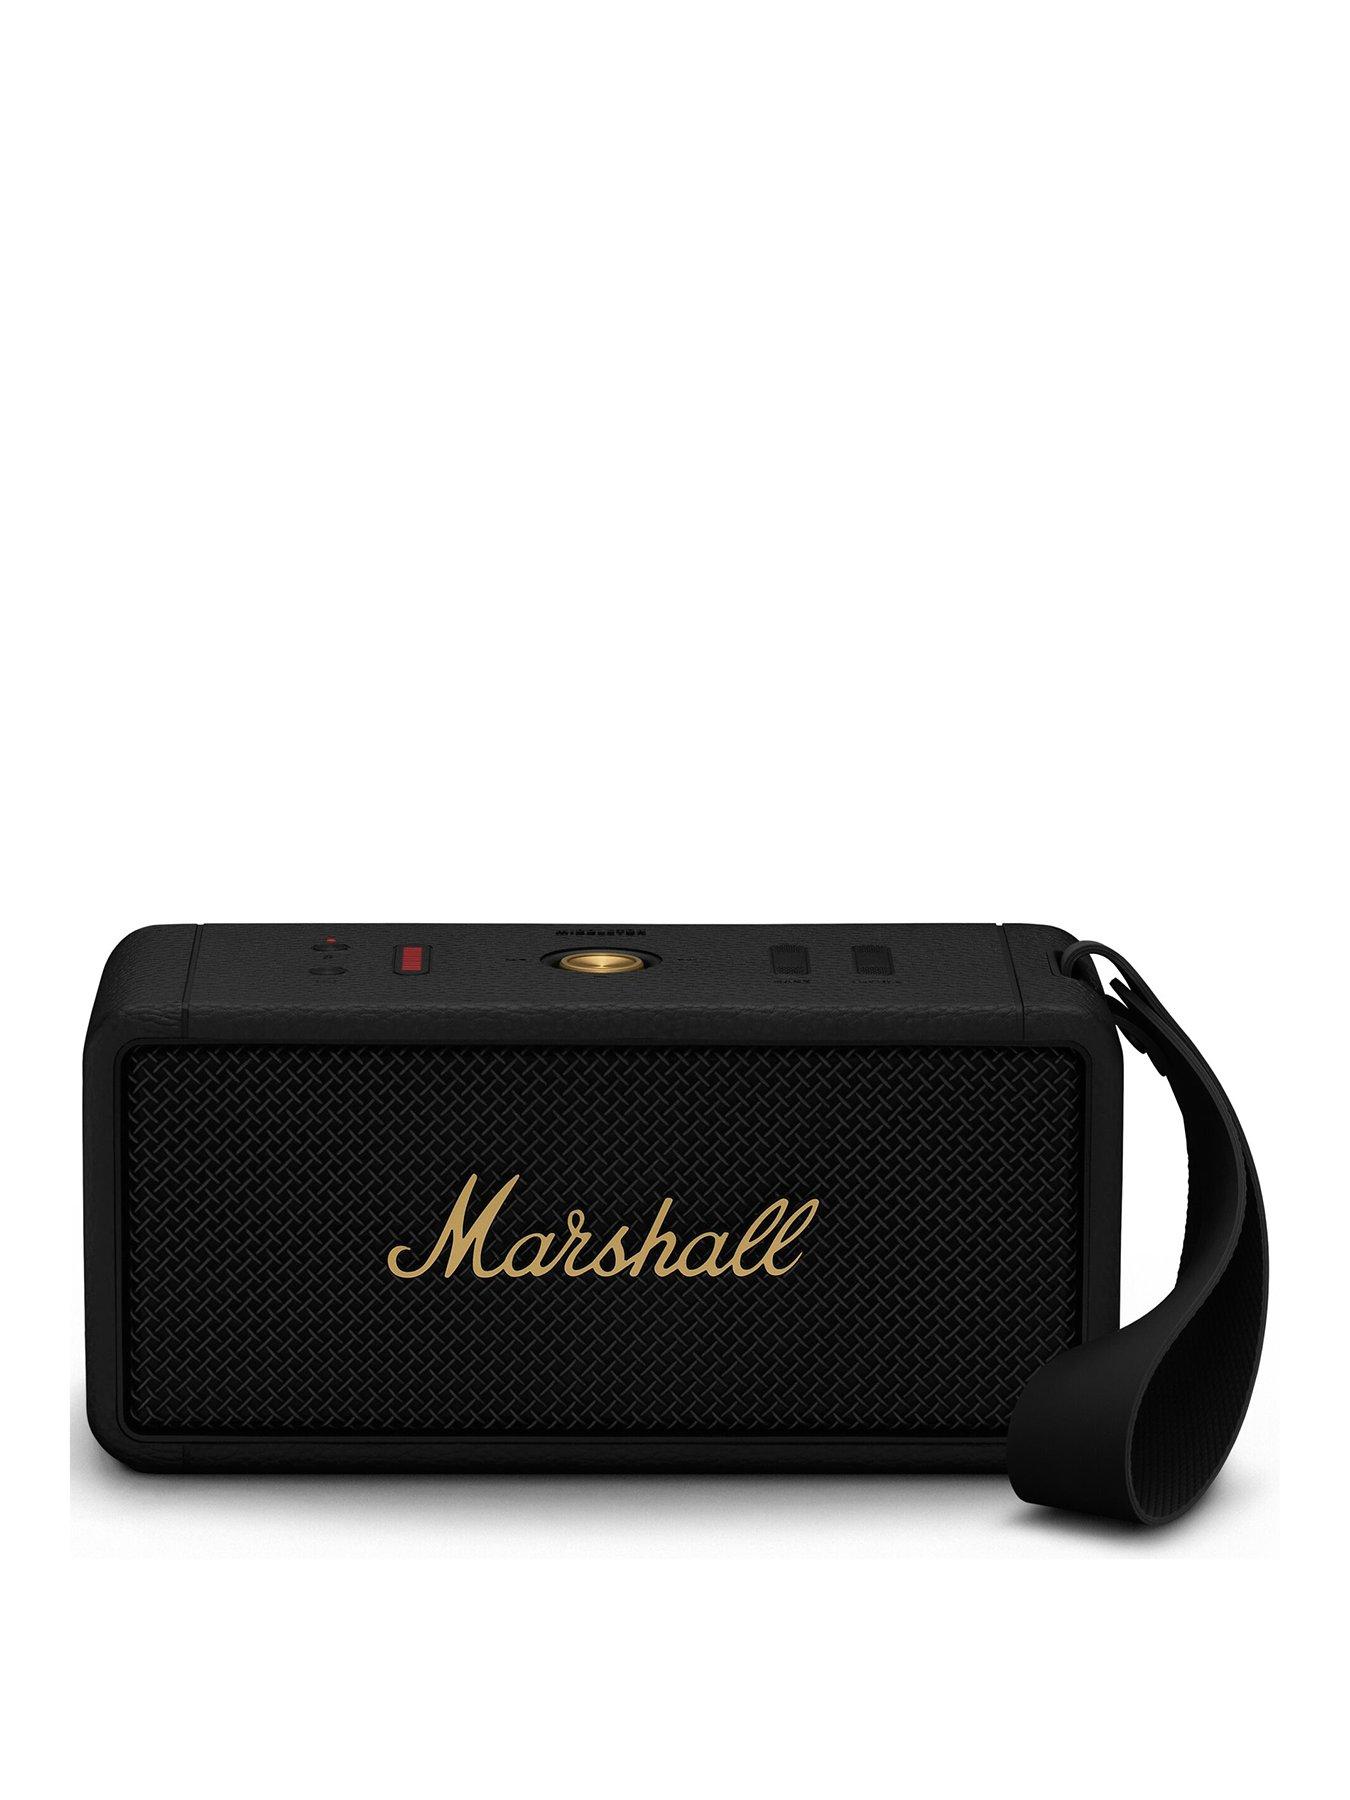 Marshall, Speakers, Speakers & smart speakers